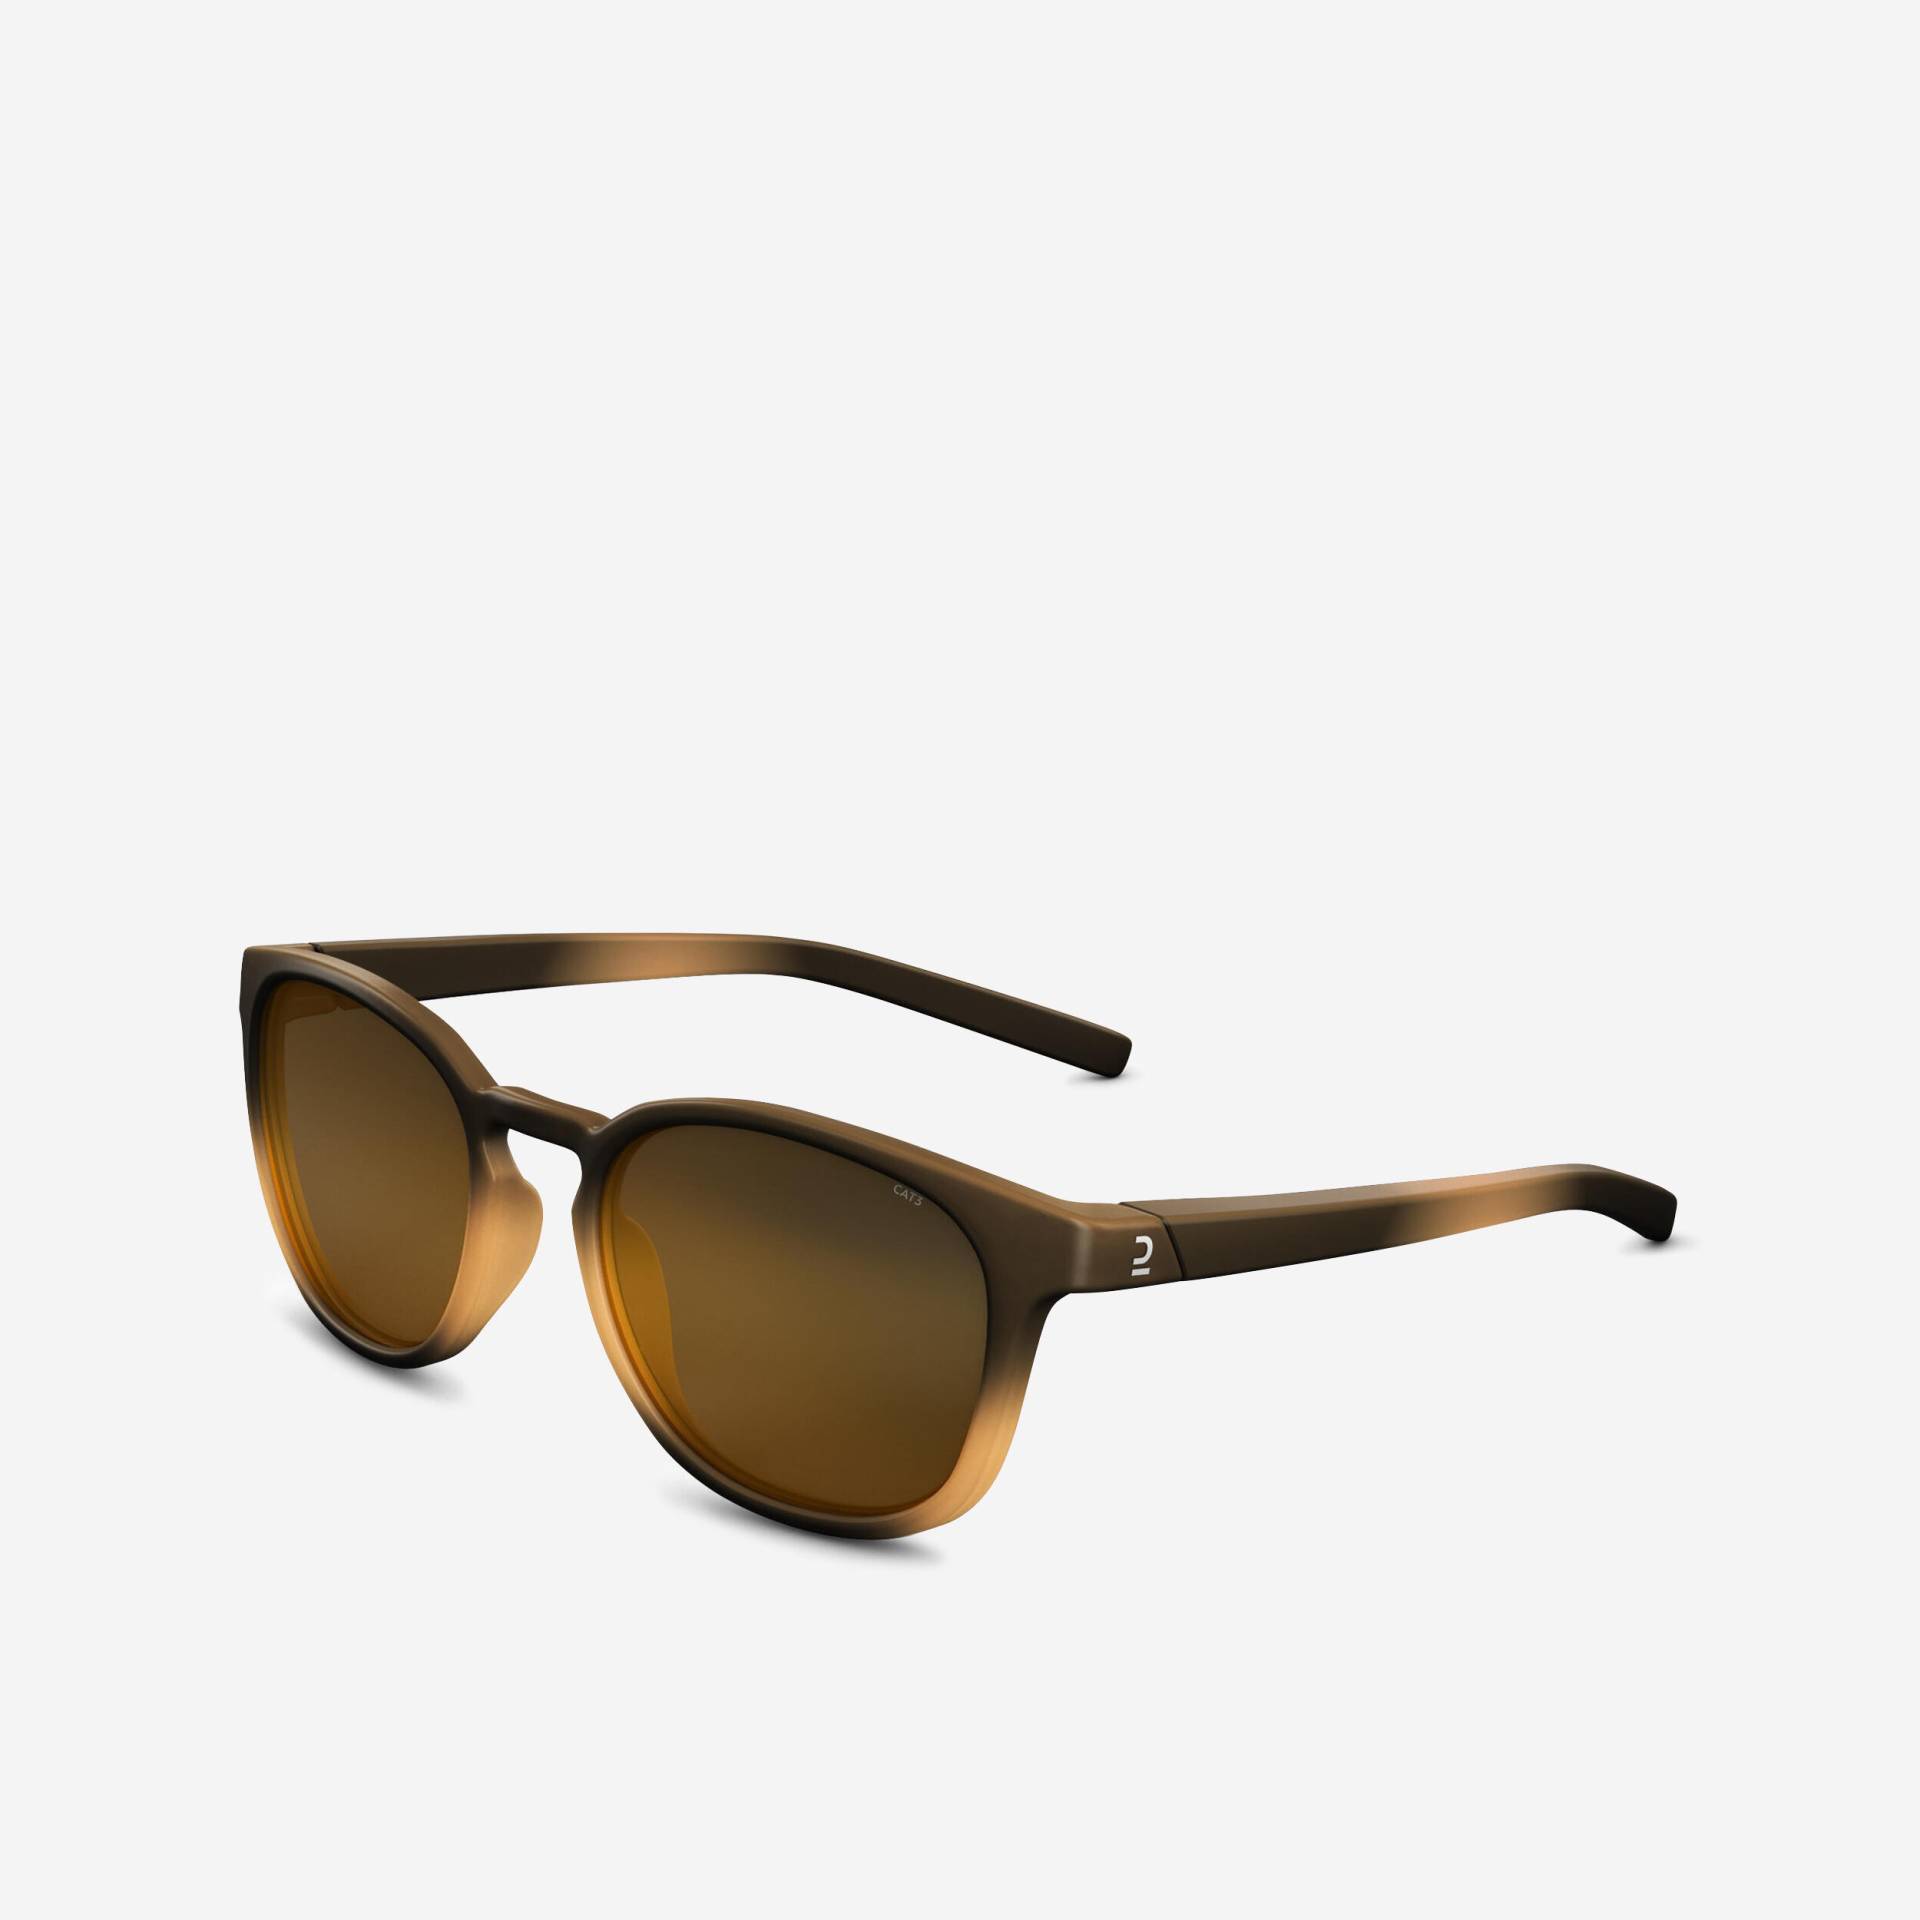 Sonnenbrille Damen/Herren Wandern - MH160 Kategorie 3 von QUECHUA